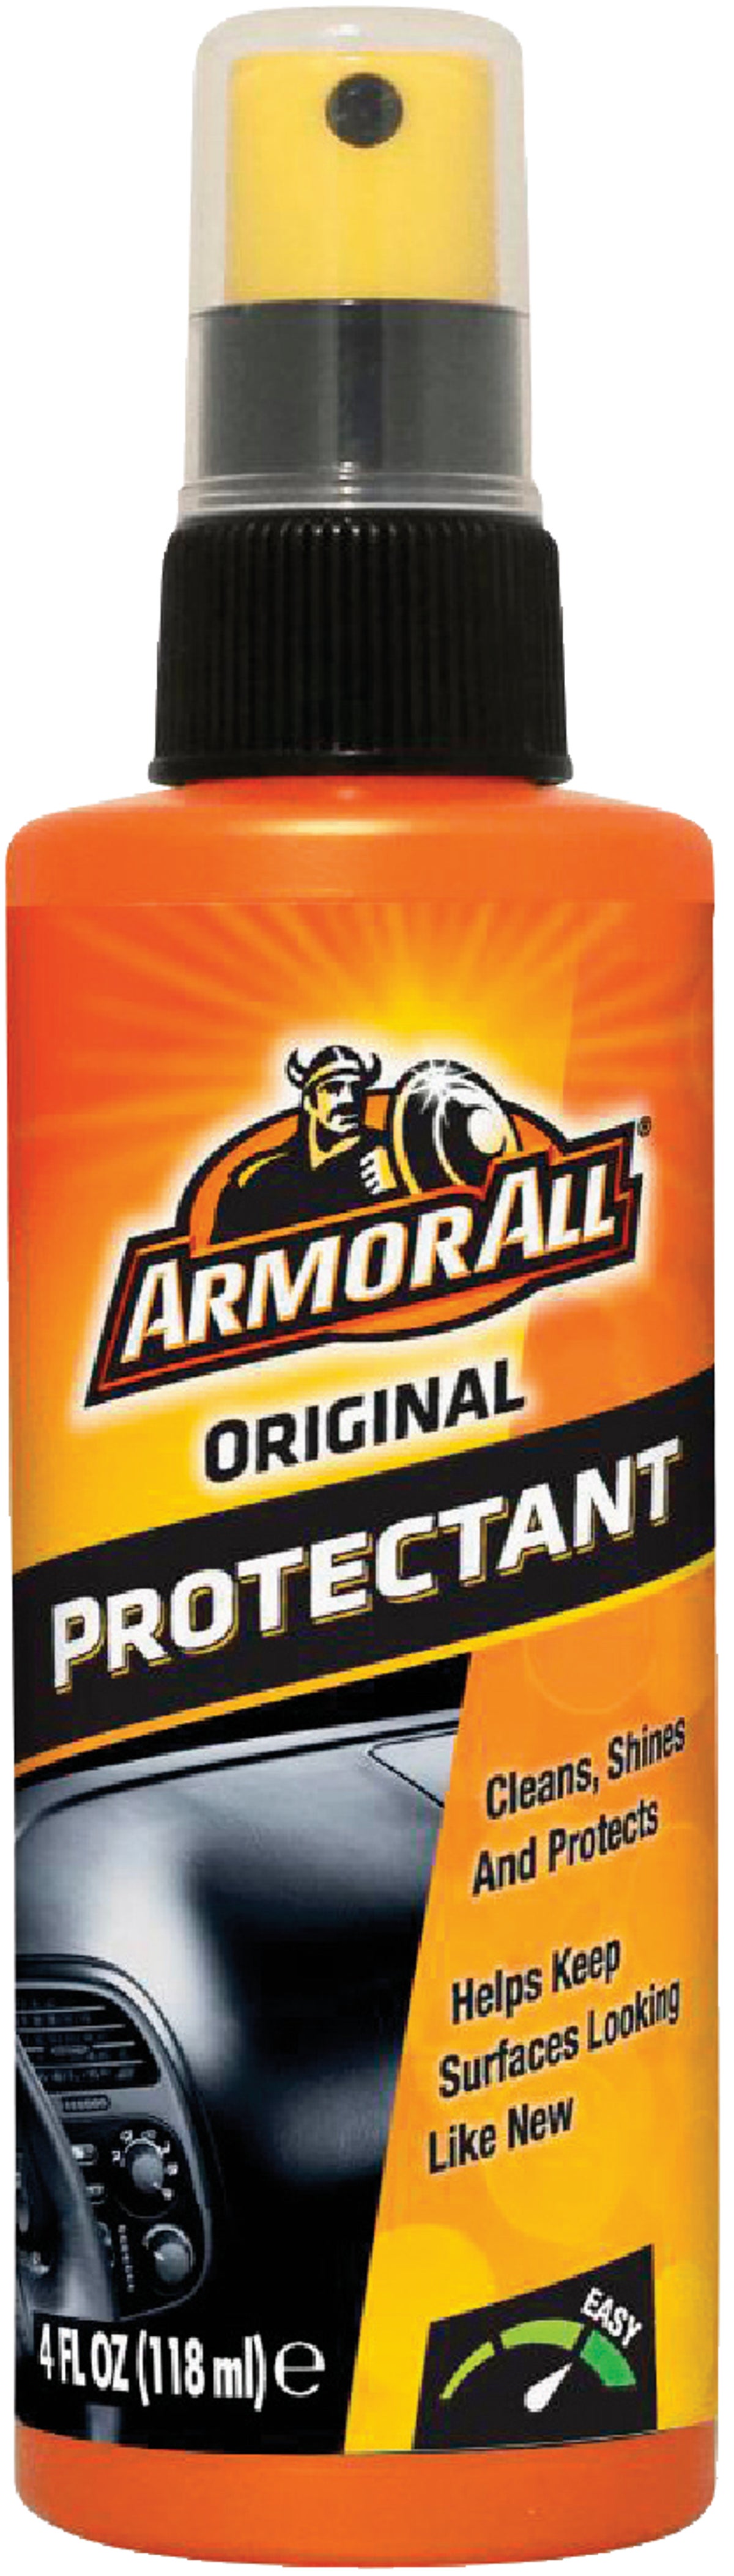 Buy Armor All Original Protectant 4 Oz.